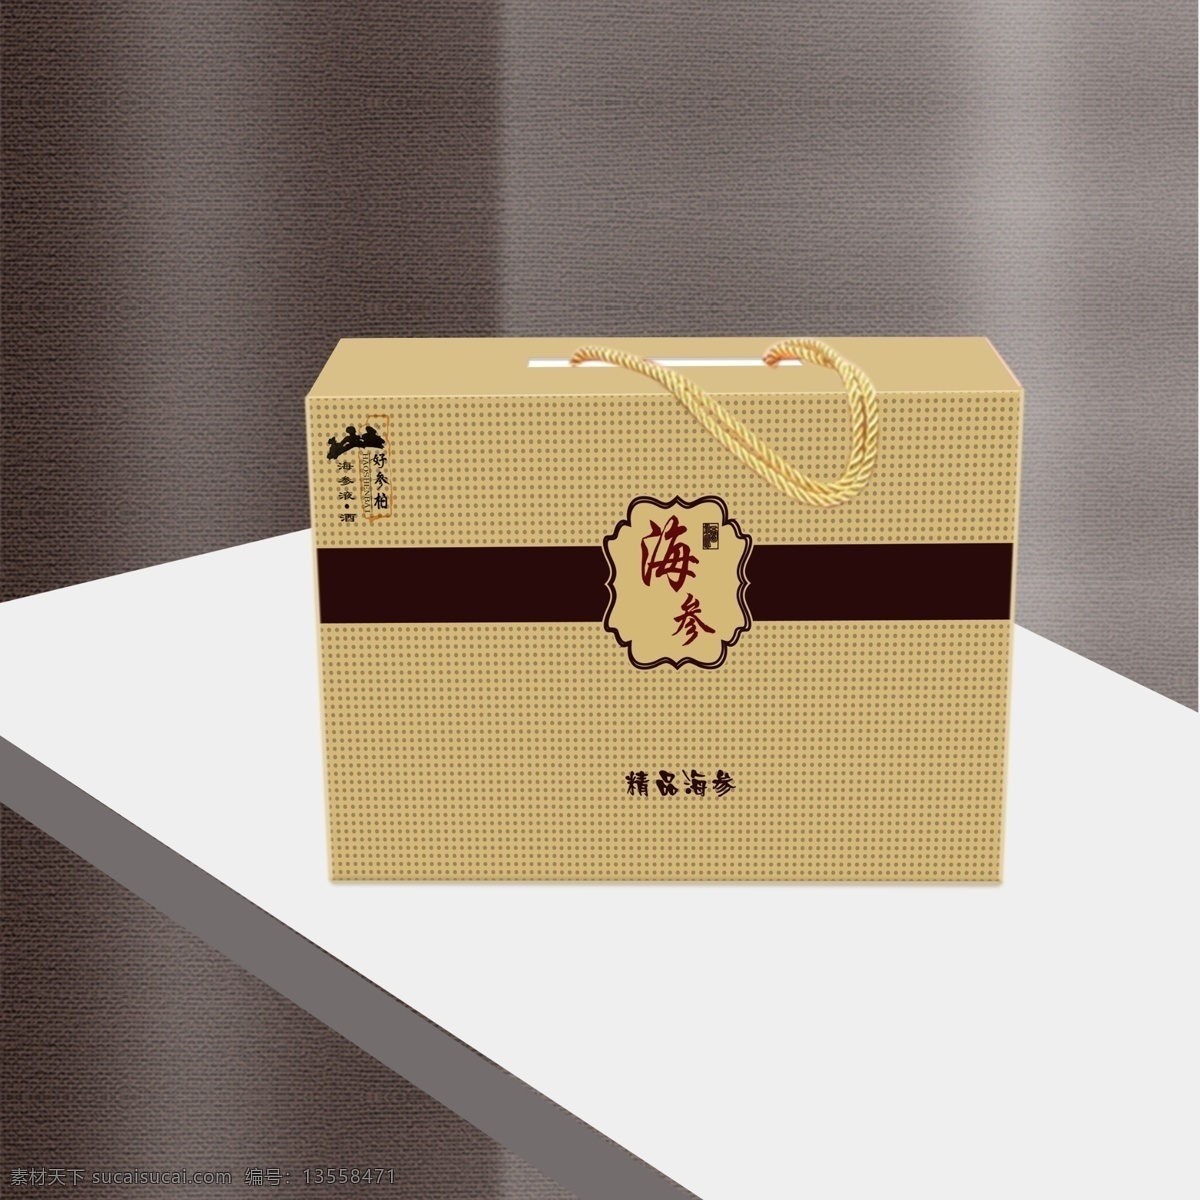 海参包装盒 包装盒 海参 包装盒效果图 手提包装盒 手提 包装 白色